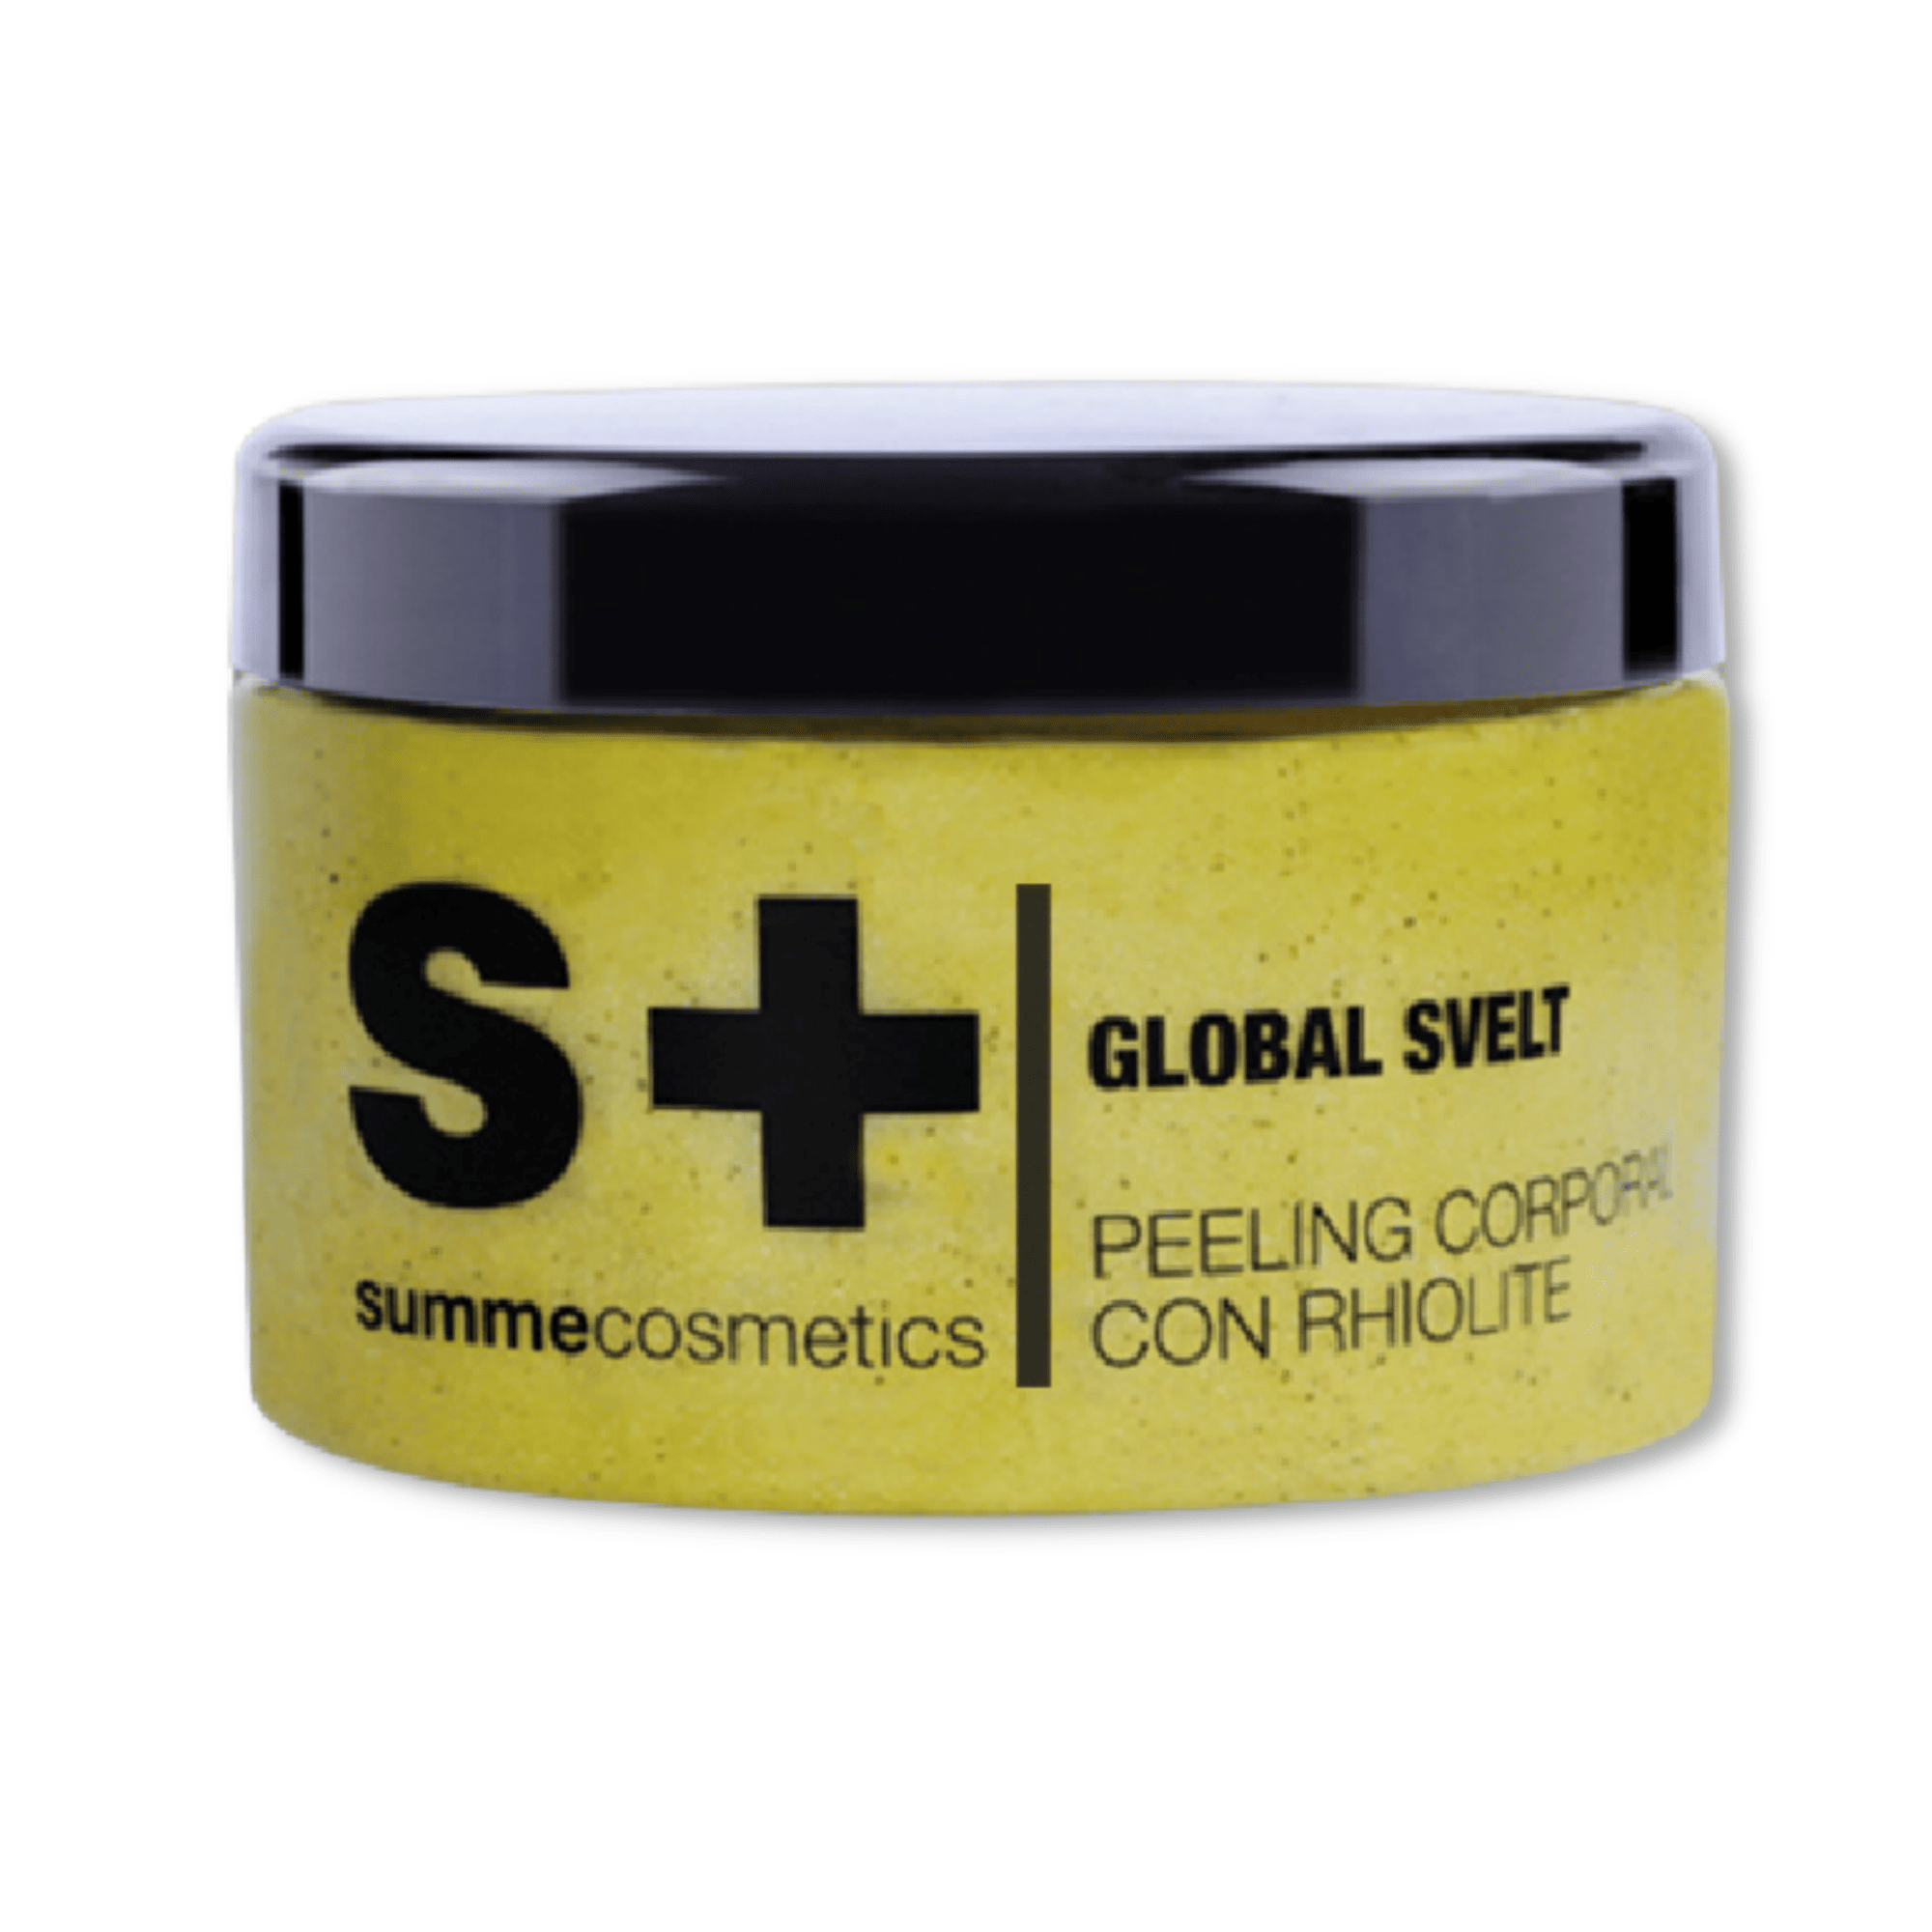 SummeCosmetics Global Svelt - Peeling Corporal Rhiolite